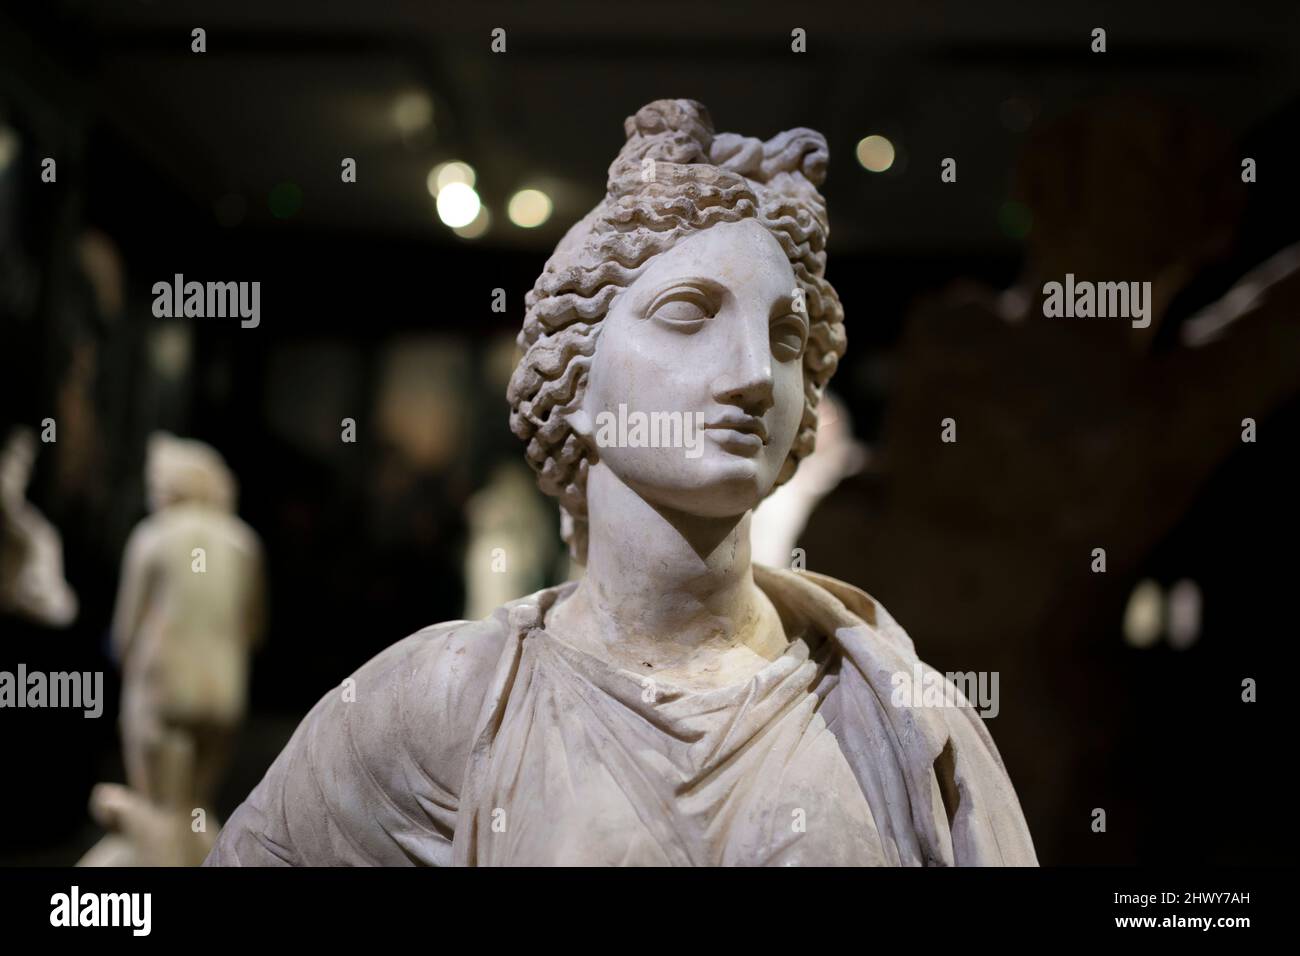 Antica statua della dea greca Artemis da Cirene (Libia), 2nd secolo d.C. Museo Archeologico di Istanbul. Foto Stock